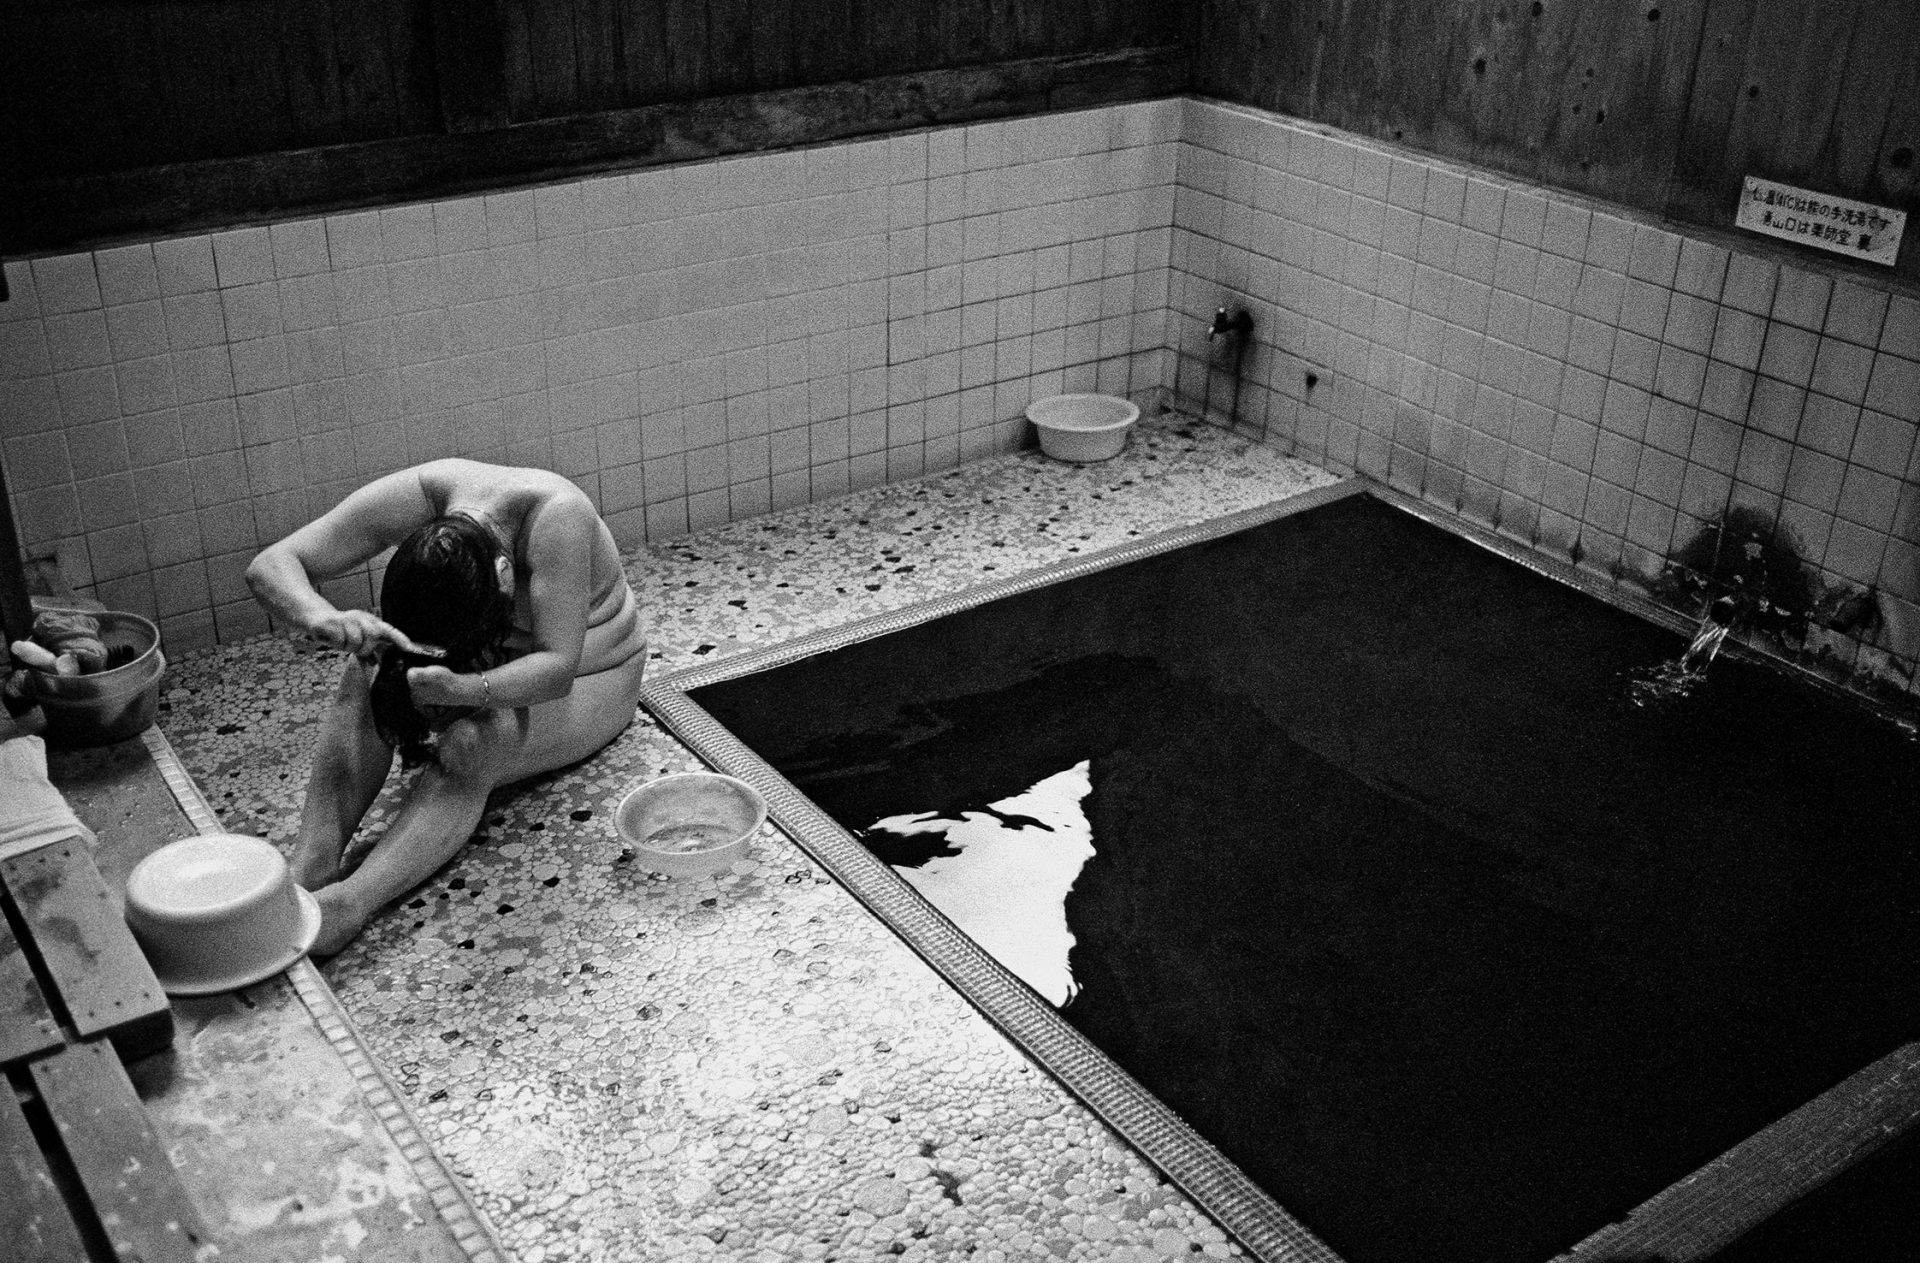  Sento, Frau kaemmt sich die Haare in einem japanischen Badehaus in den japanischen Alpen, Waschhaus, Ort der alltaeglichen Reinigung, heisse Quellen, Heisse Becken,
06/2005 (Sento – The Japanese Bathhouse)